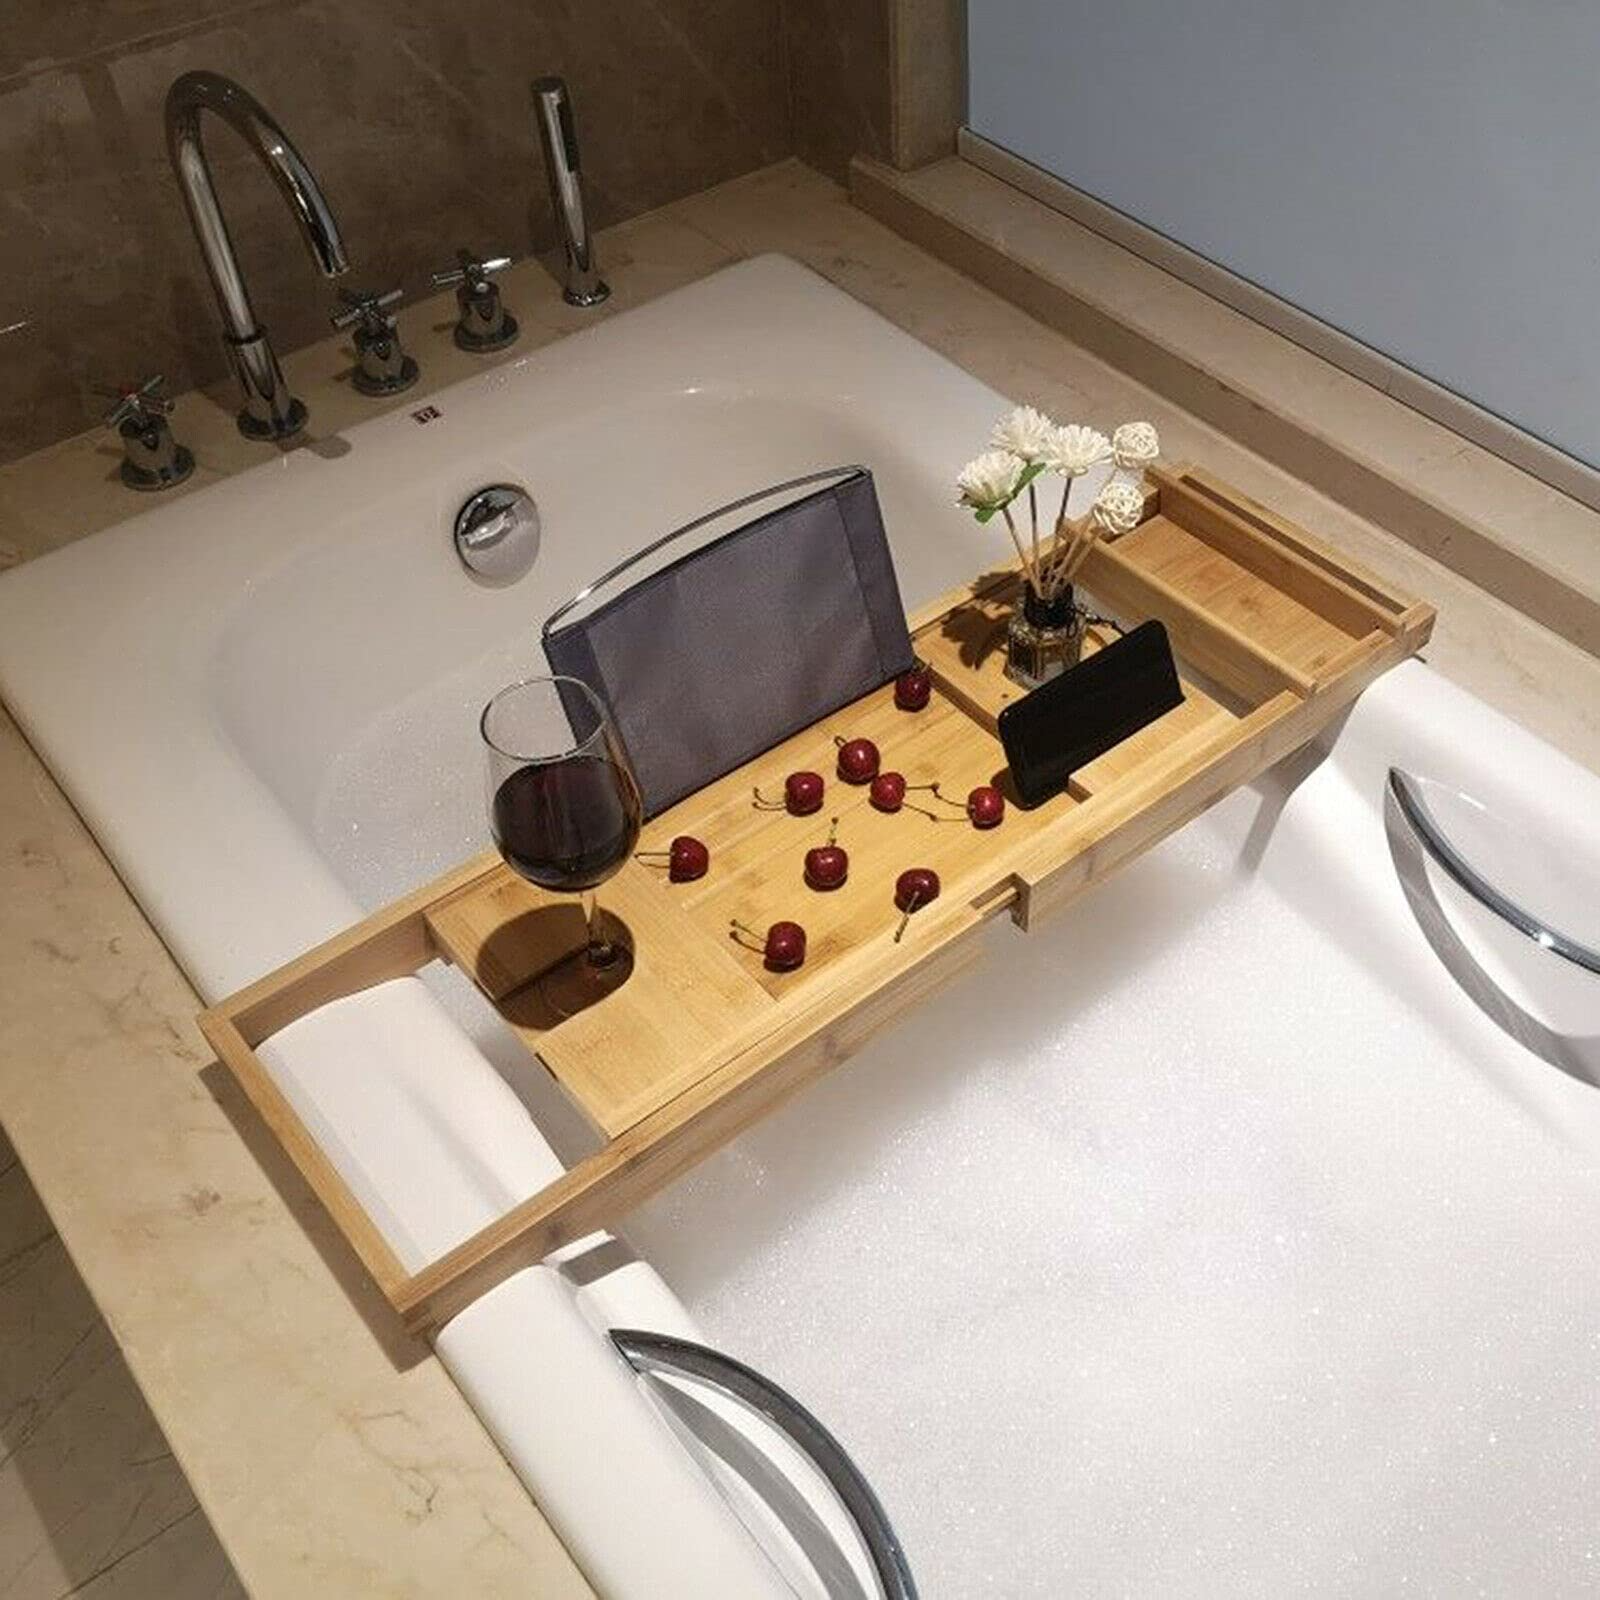 Vassoio per vasca da bagno - Vassoio per vasca da bagno regolabile, fatto di bambù, impermeabile